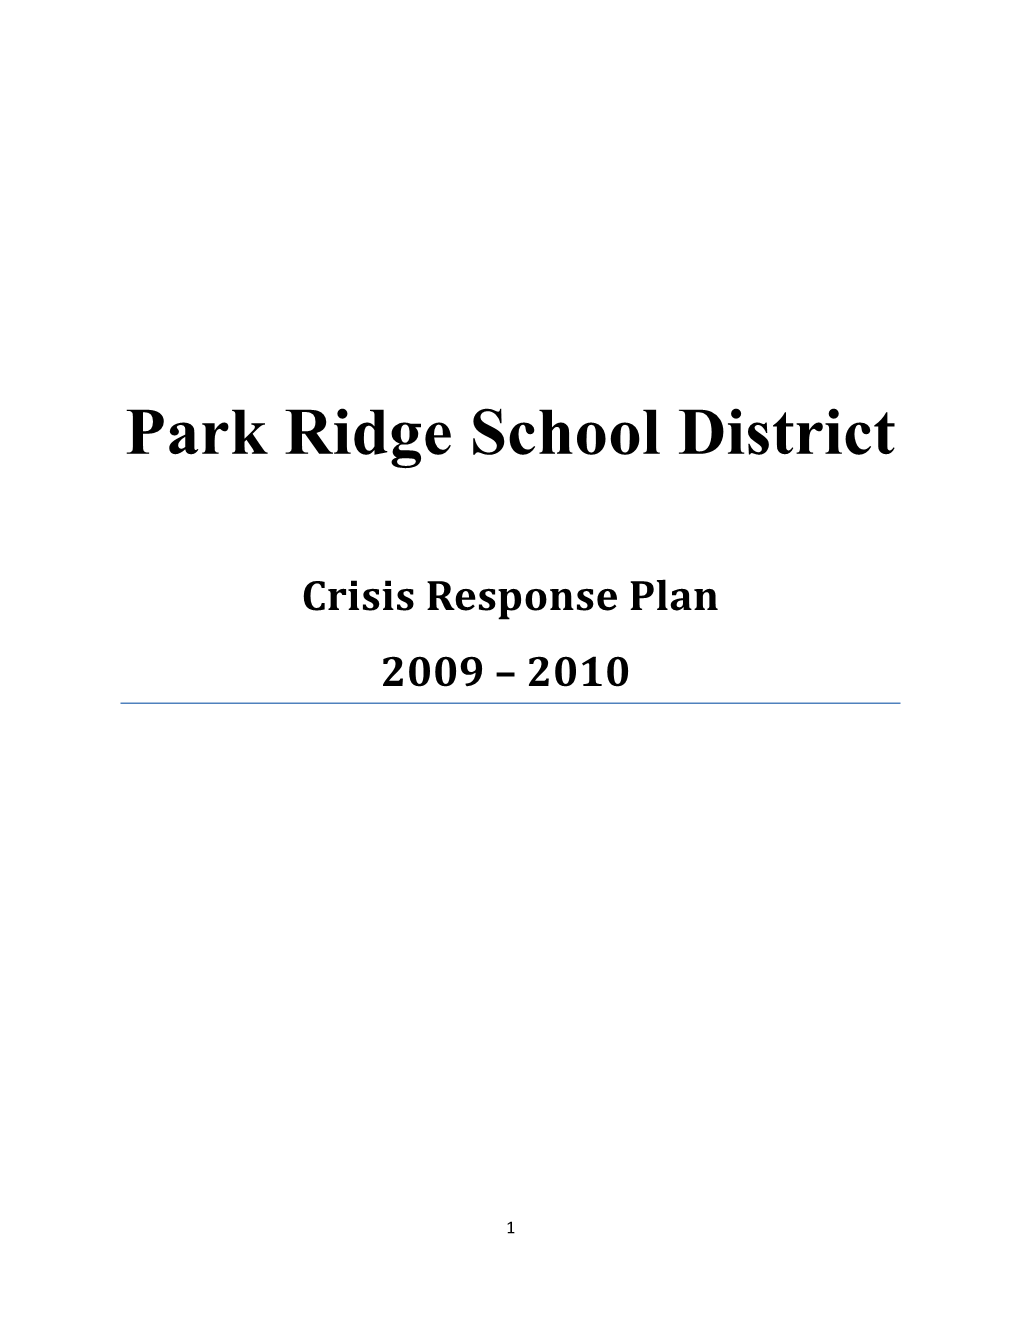 Crisis Response Plan